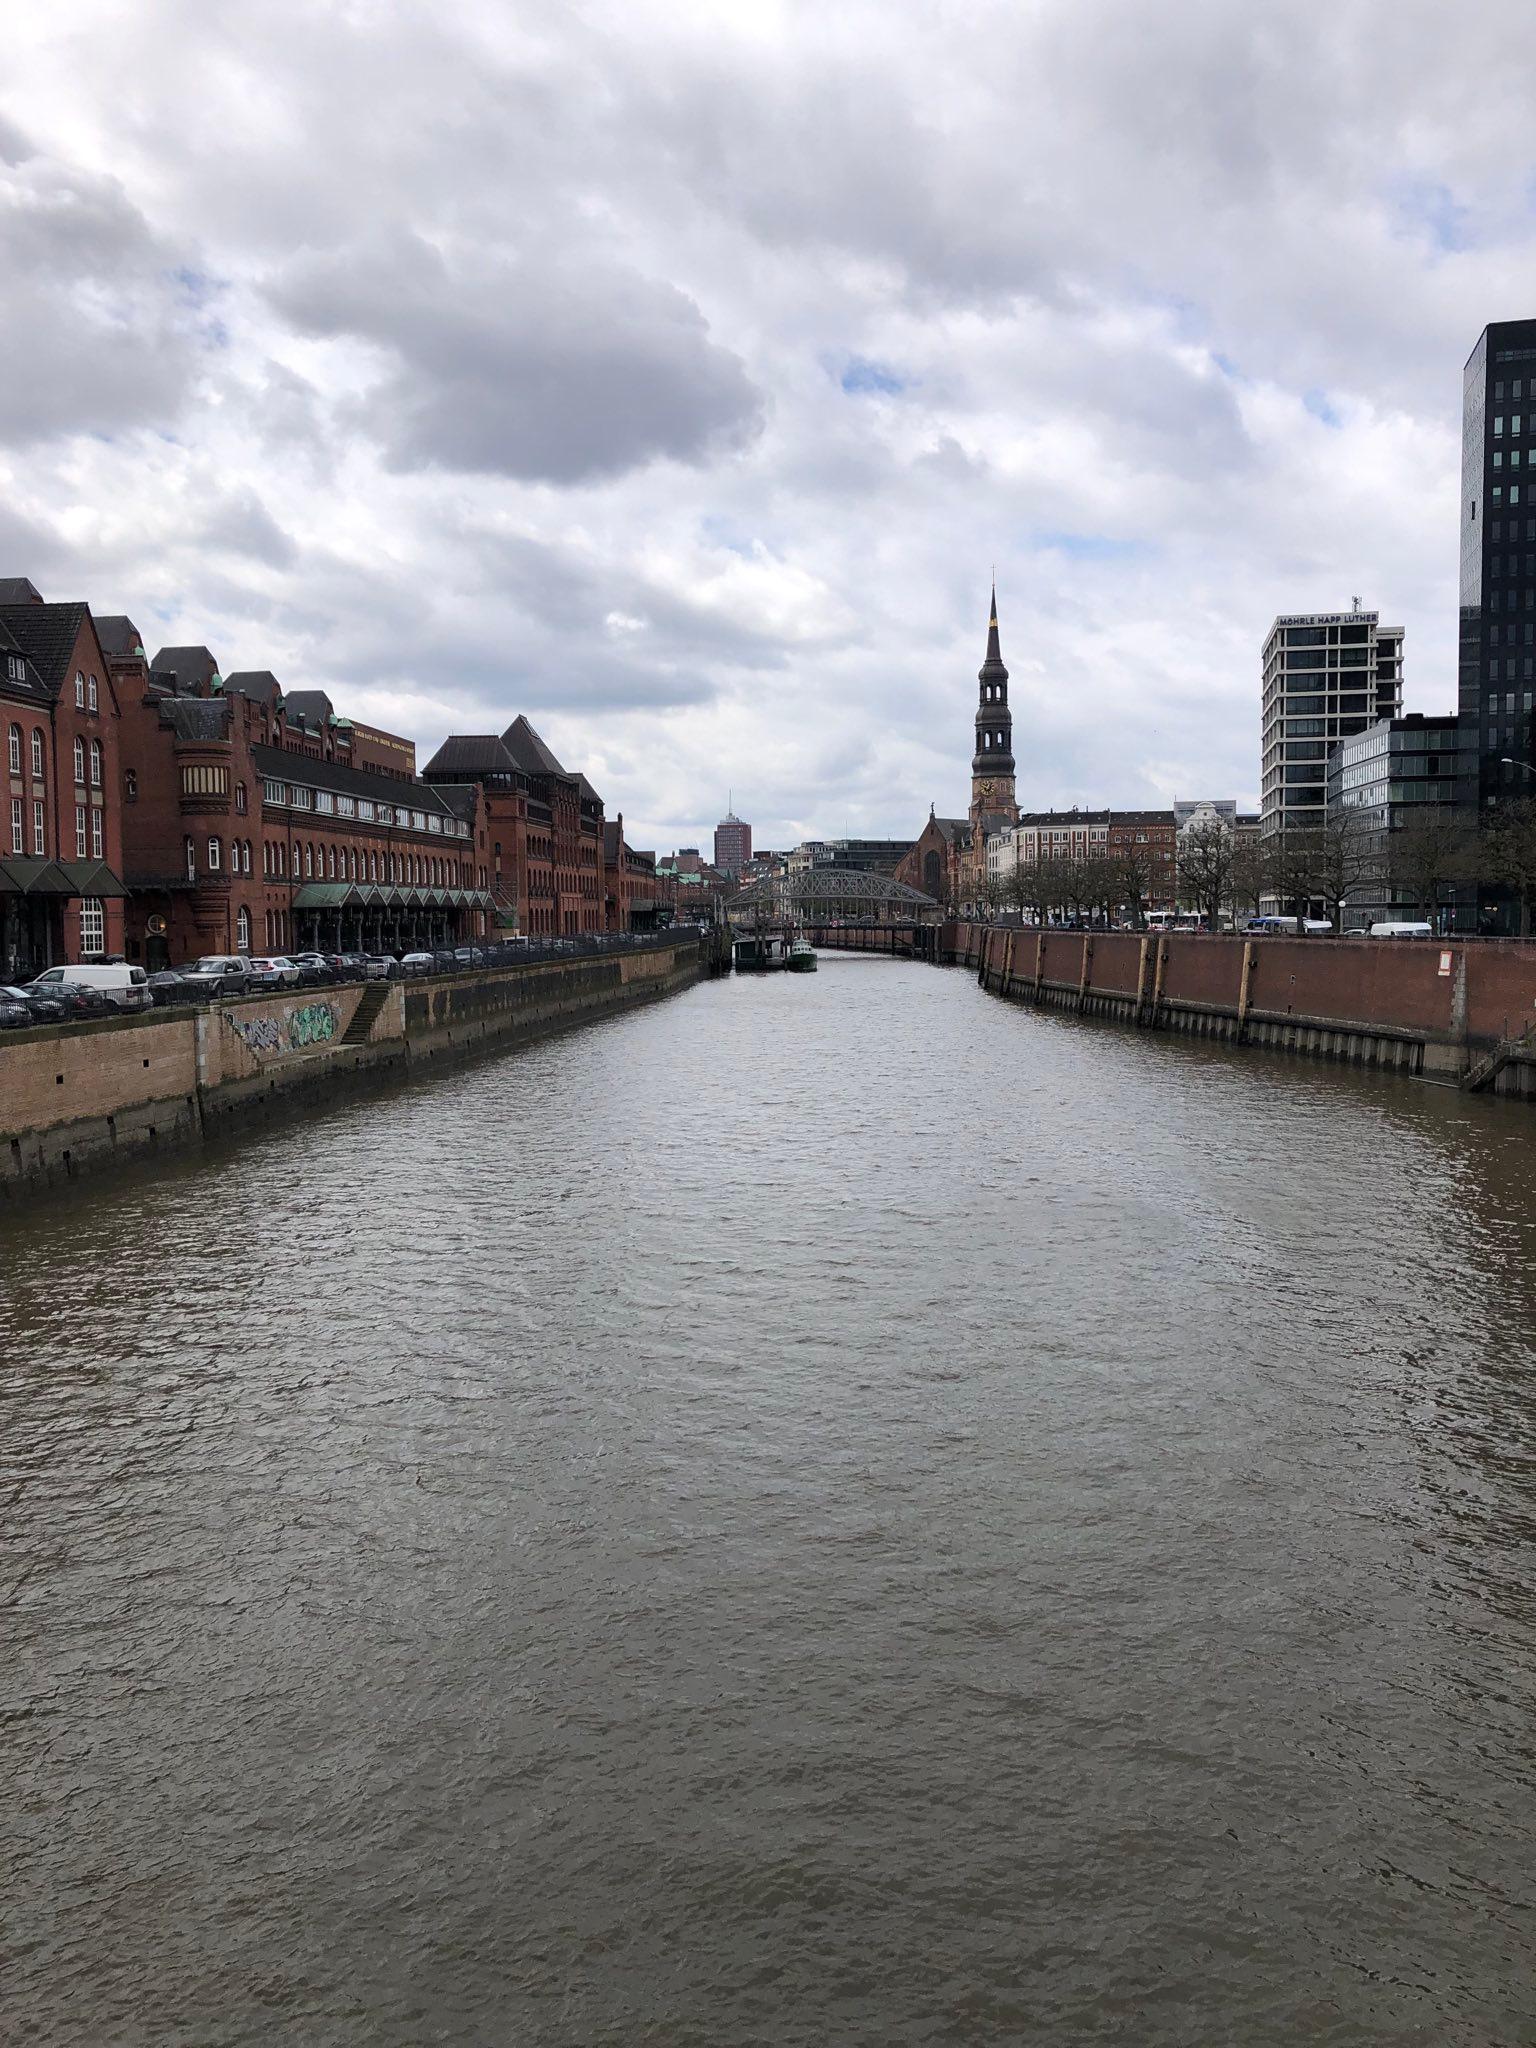 Links die Speicherstadt in Hamburg mit dem ehemaligen Hauptzollamt, in der Mitte der Zollkanal, rechts Gebäude an der Straße Dovenfleet